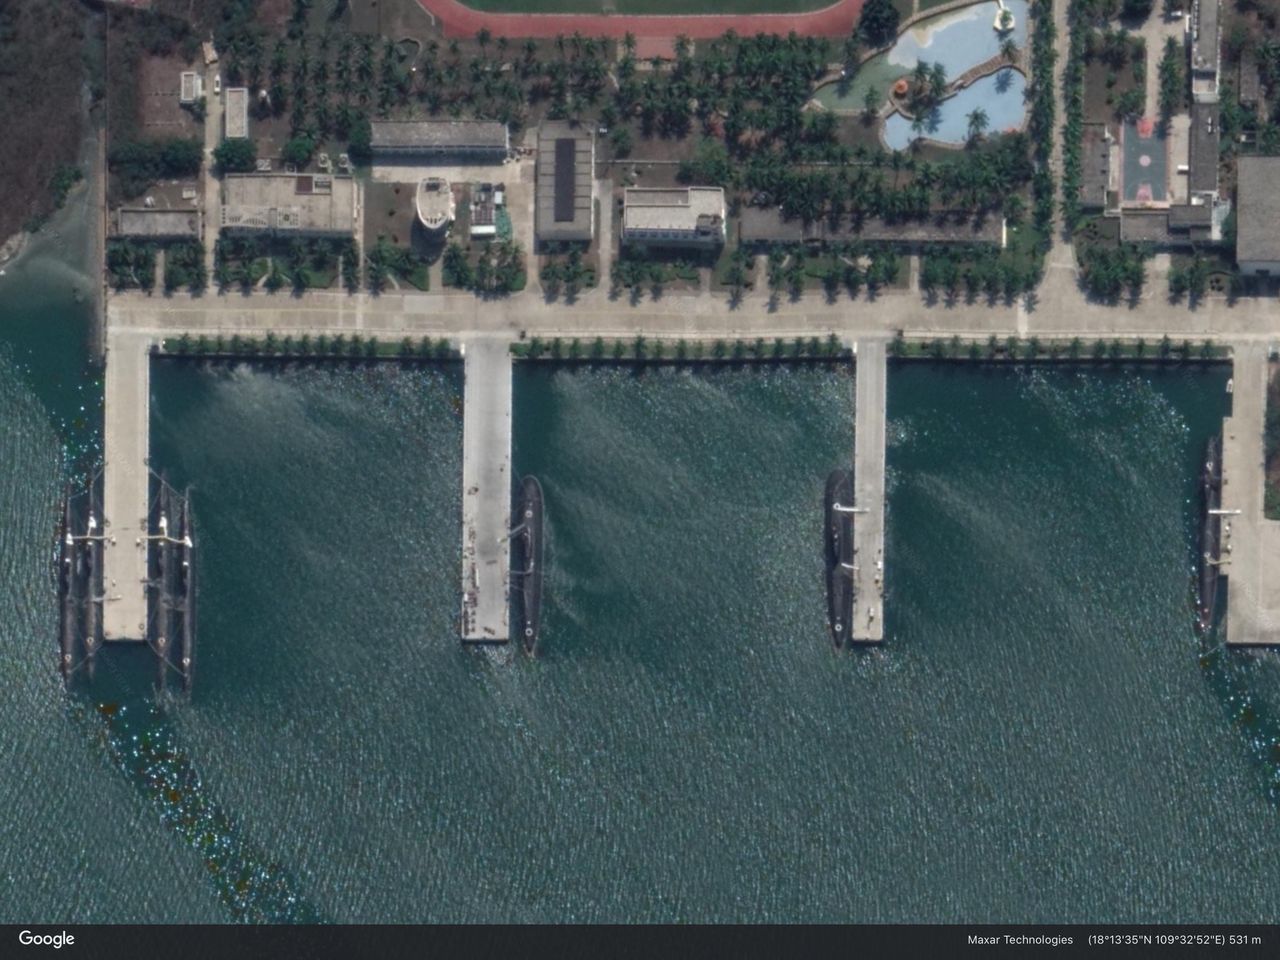 A Chinese submarine docks at Yulin Harbor on China’s Hainan Island in the northern South China Sea.